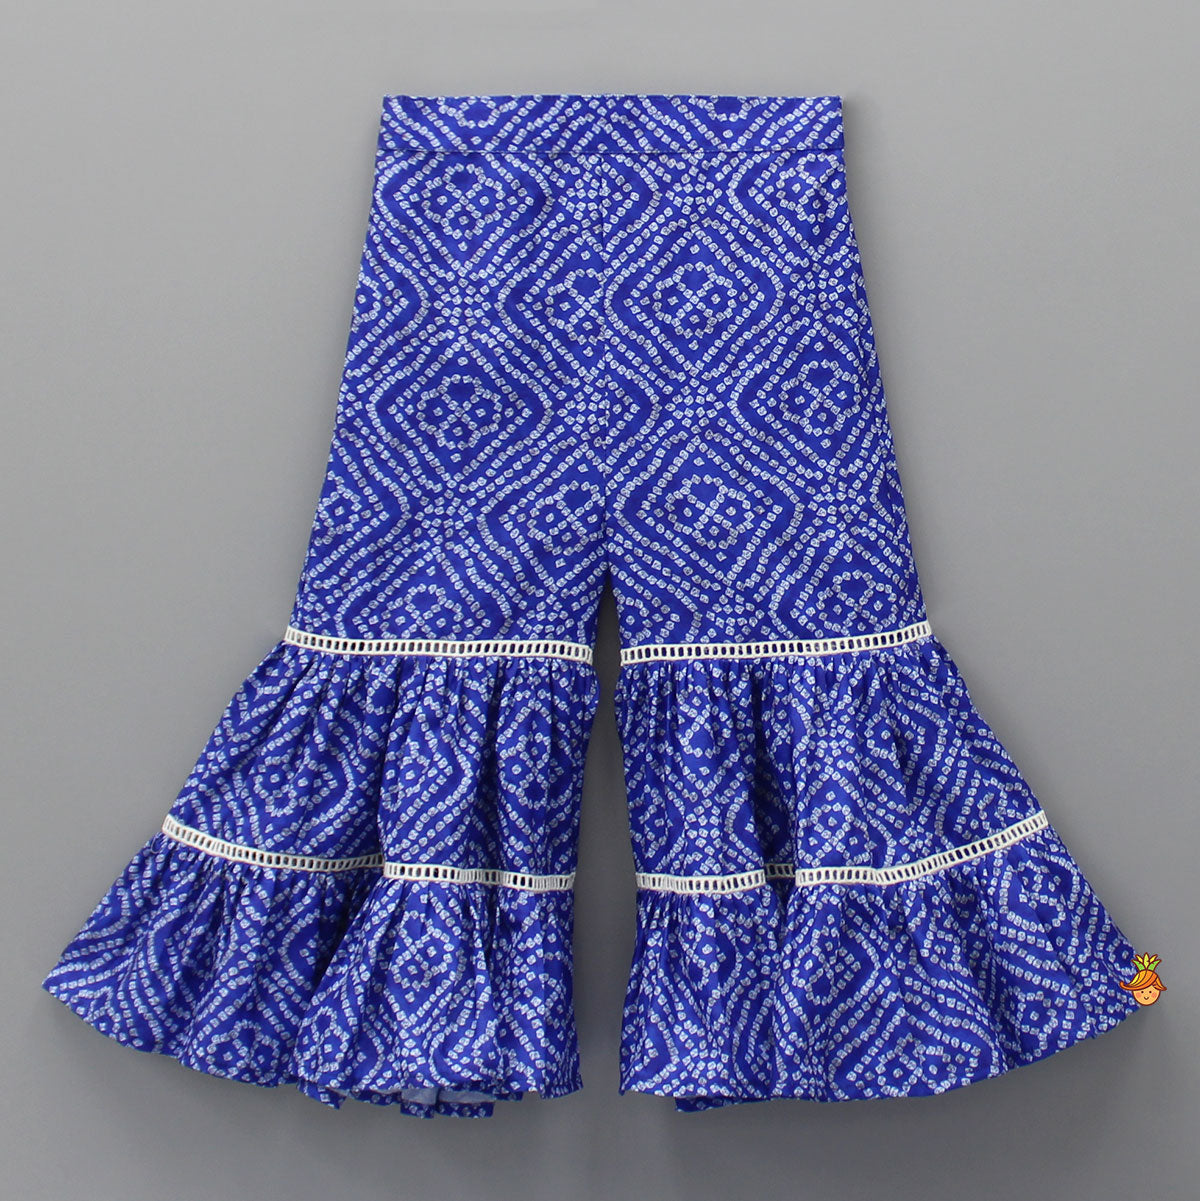 Bandhani Printed Stylish Blue Top And Sharara